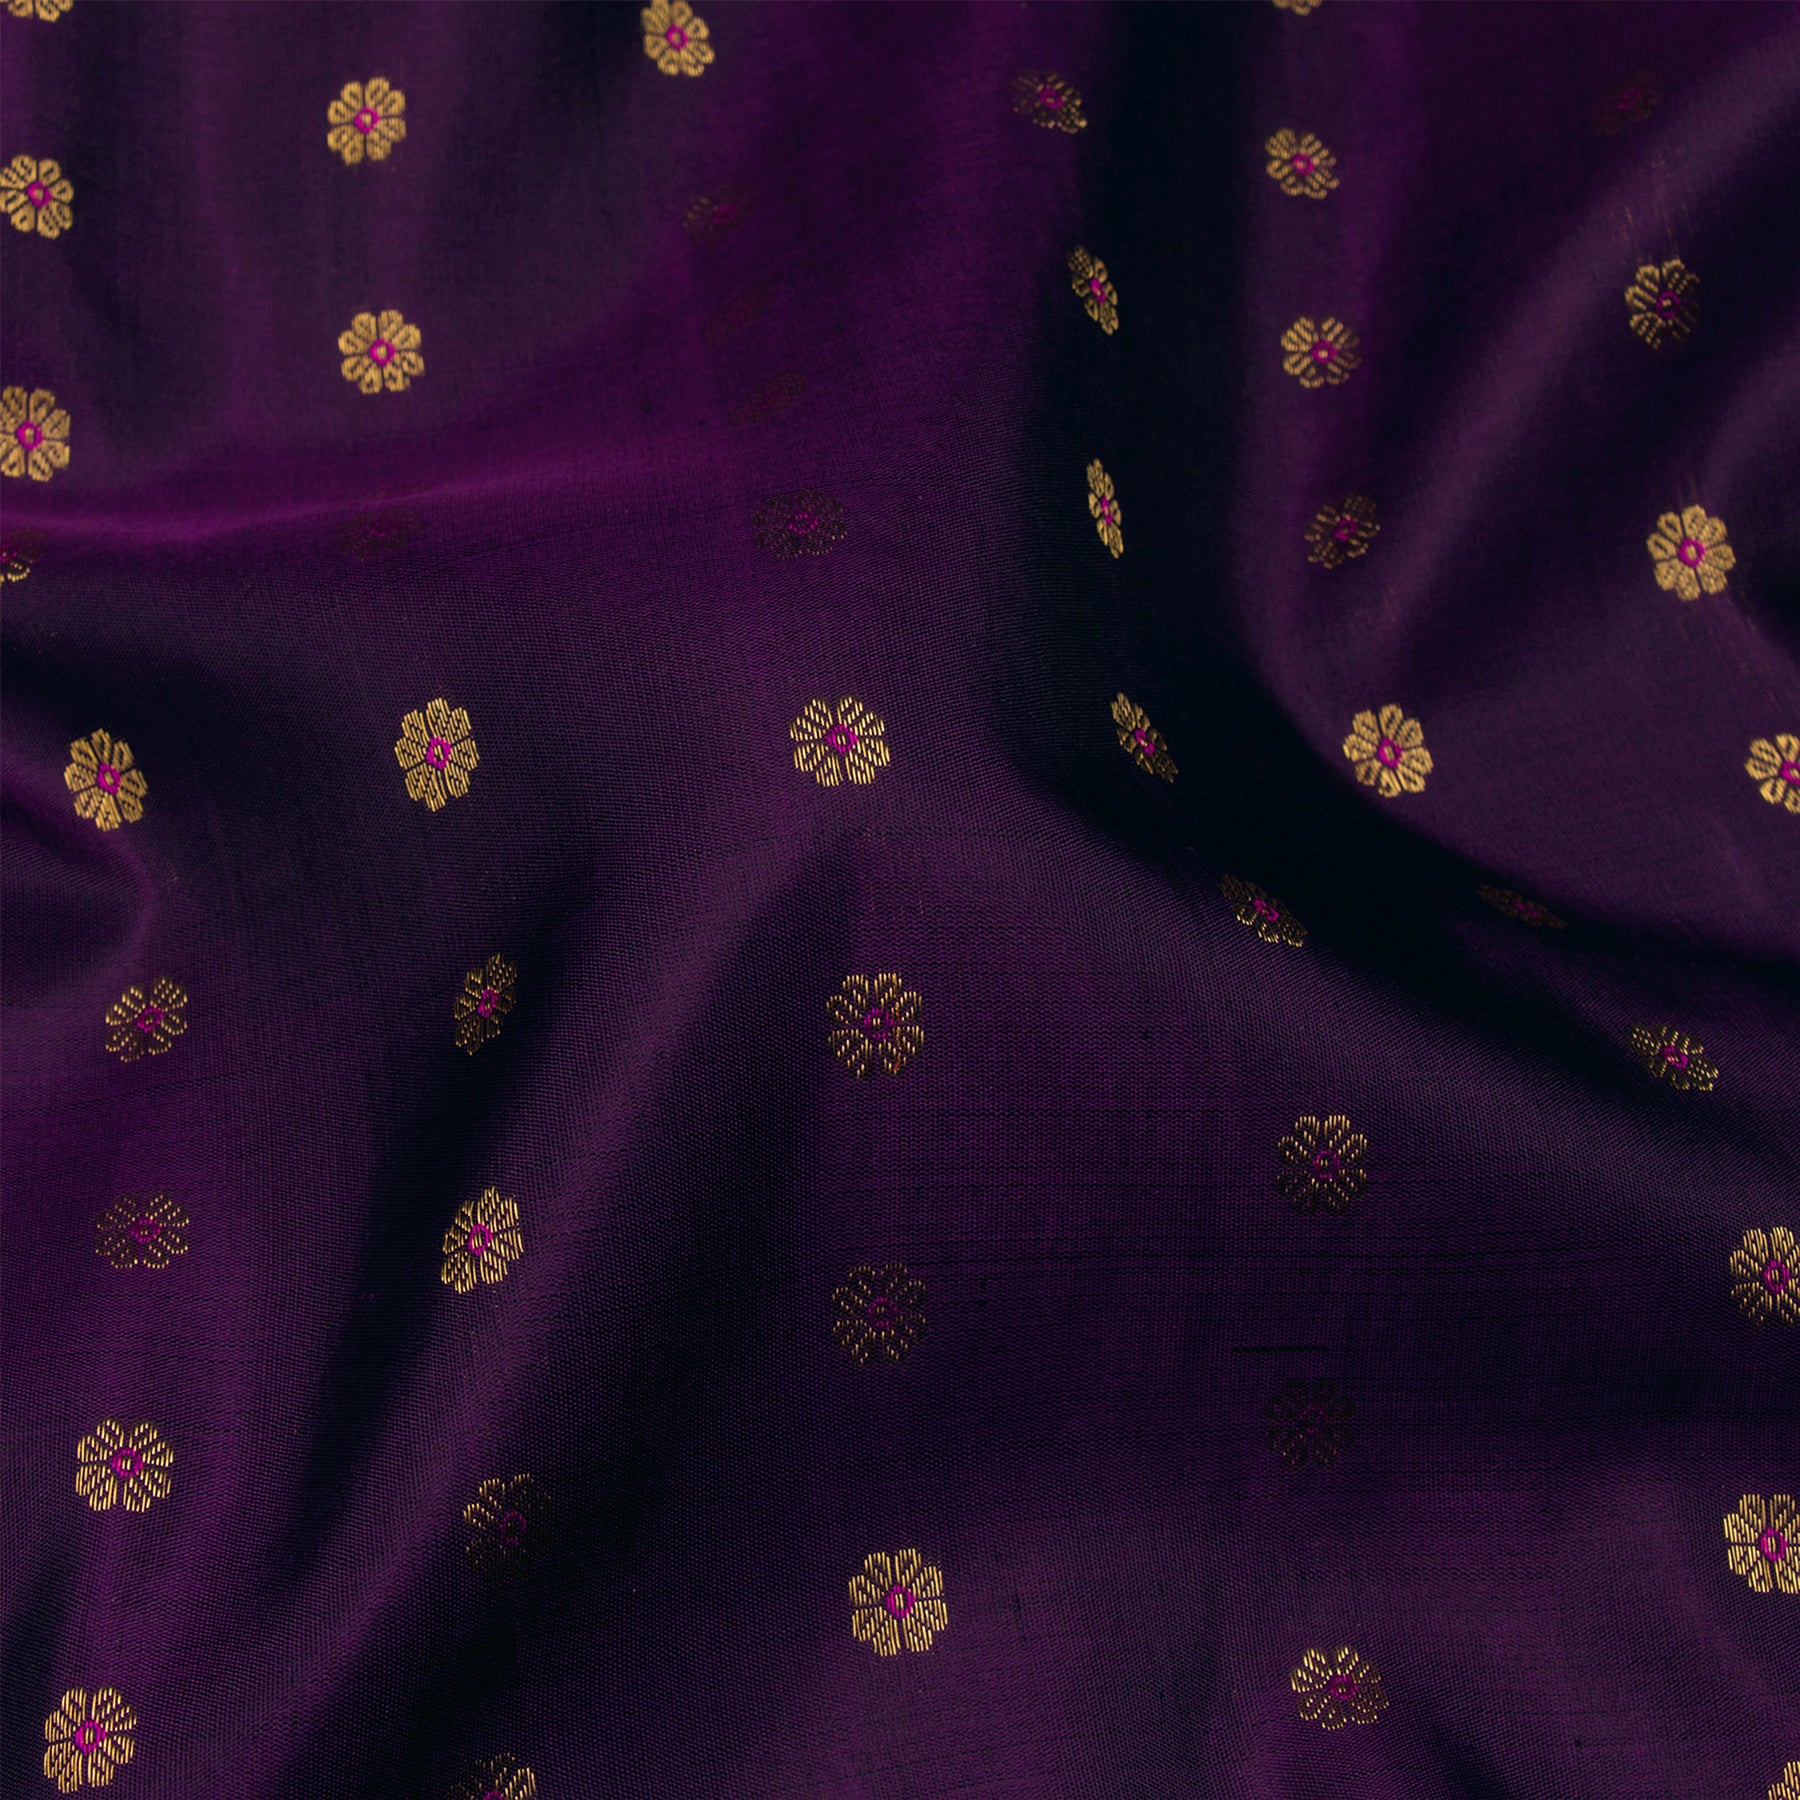 Kanakavalli Kanjivaram Silk Sari 23-595-HS001-11433 - Fabric View